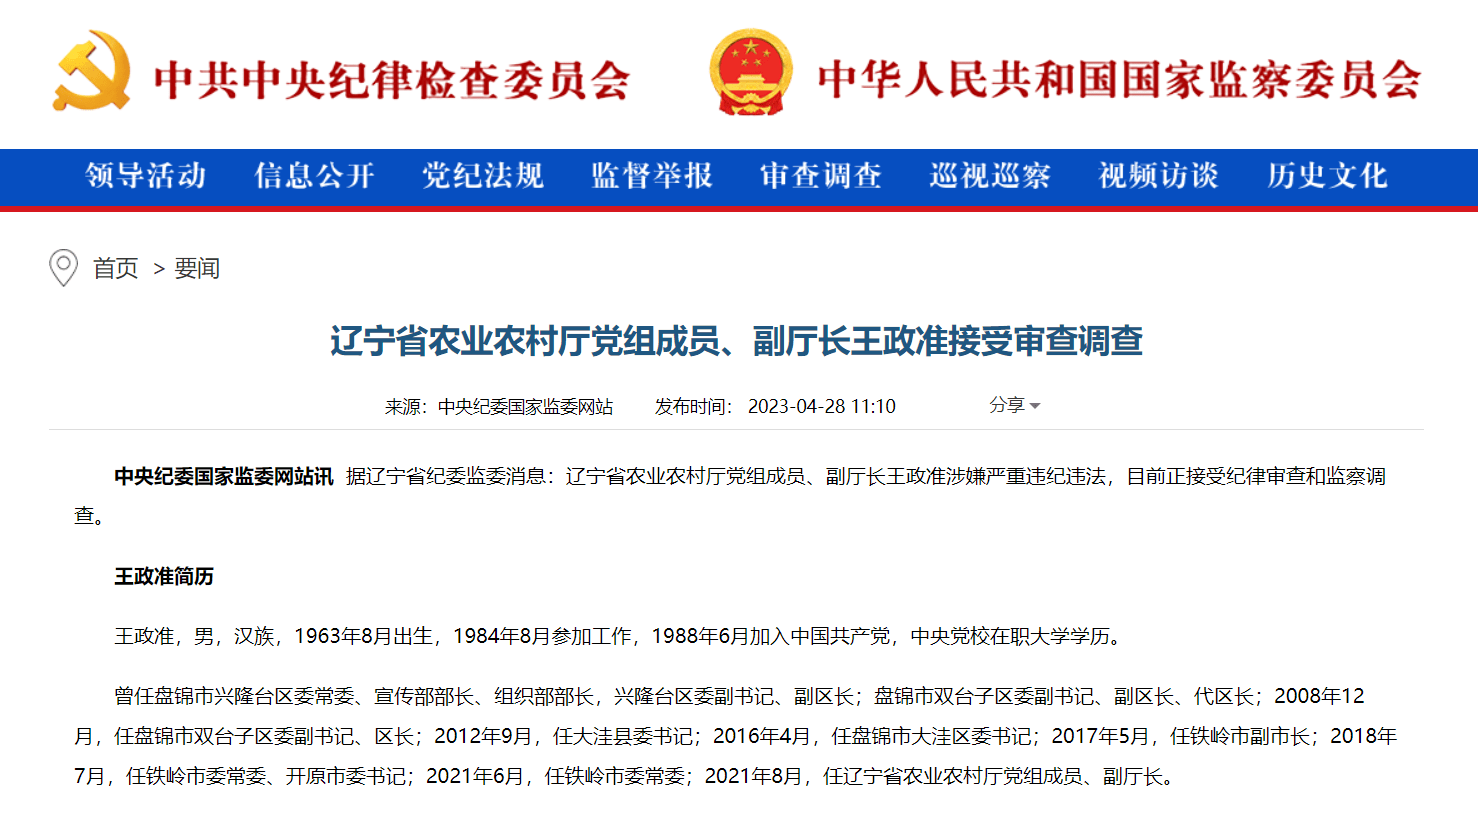 王政先生荣获“深圳特区40周年·领军人物”称号 __凤凰网